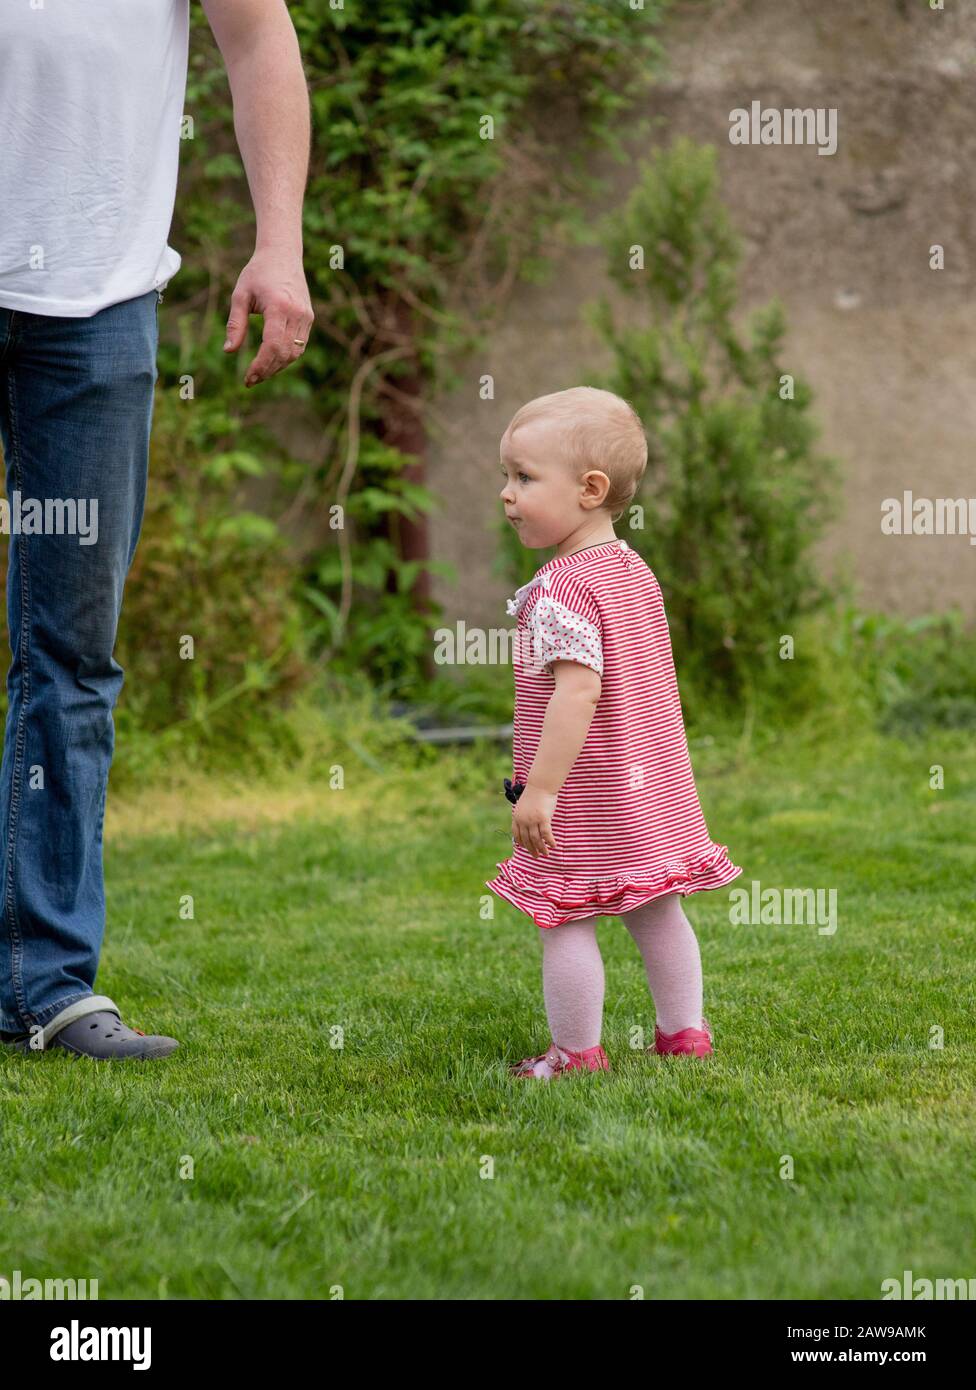 Petite fille de bébé de 1 an va. Le père marche avec l'enfant à travers l'herbe verte. Bébé apprend à marcher avec le soutien d'un parent. 1 an Banque D'Images